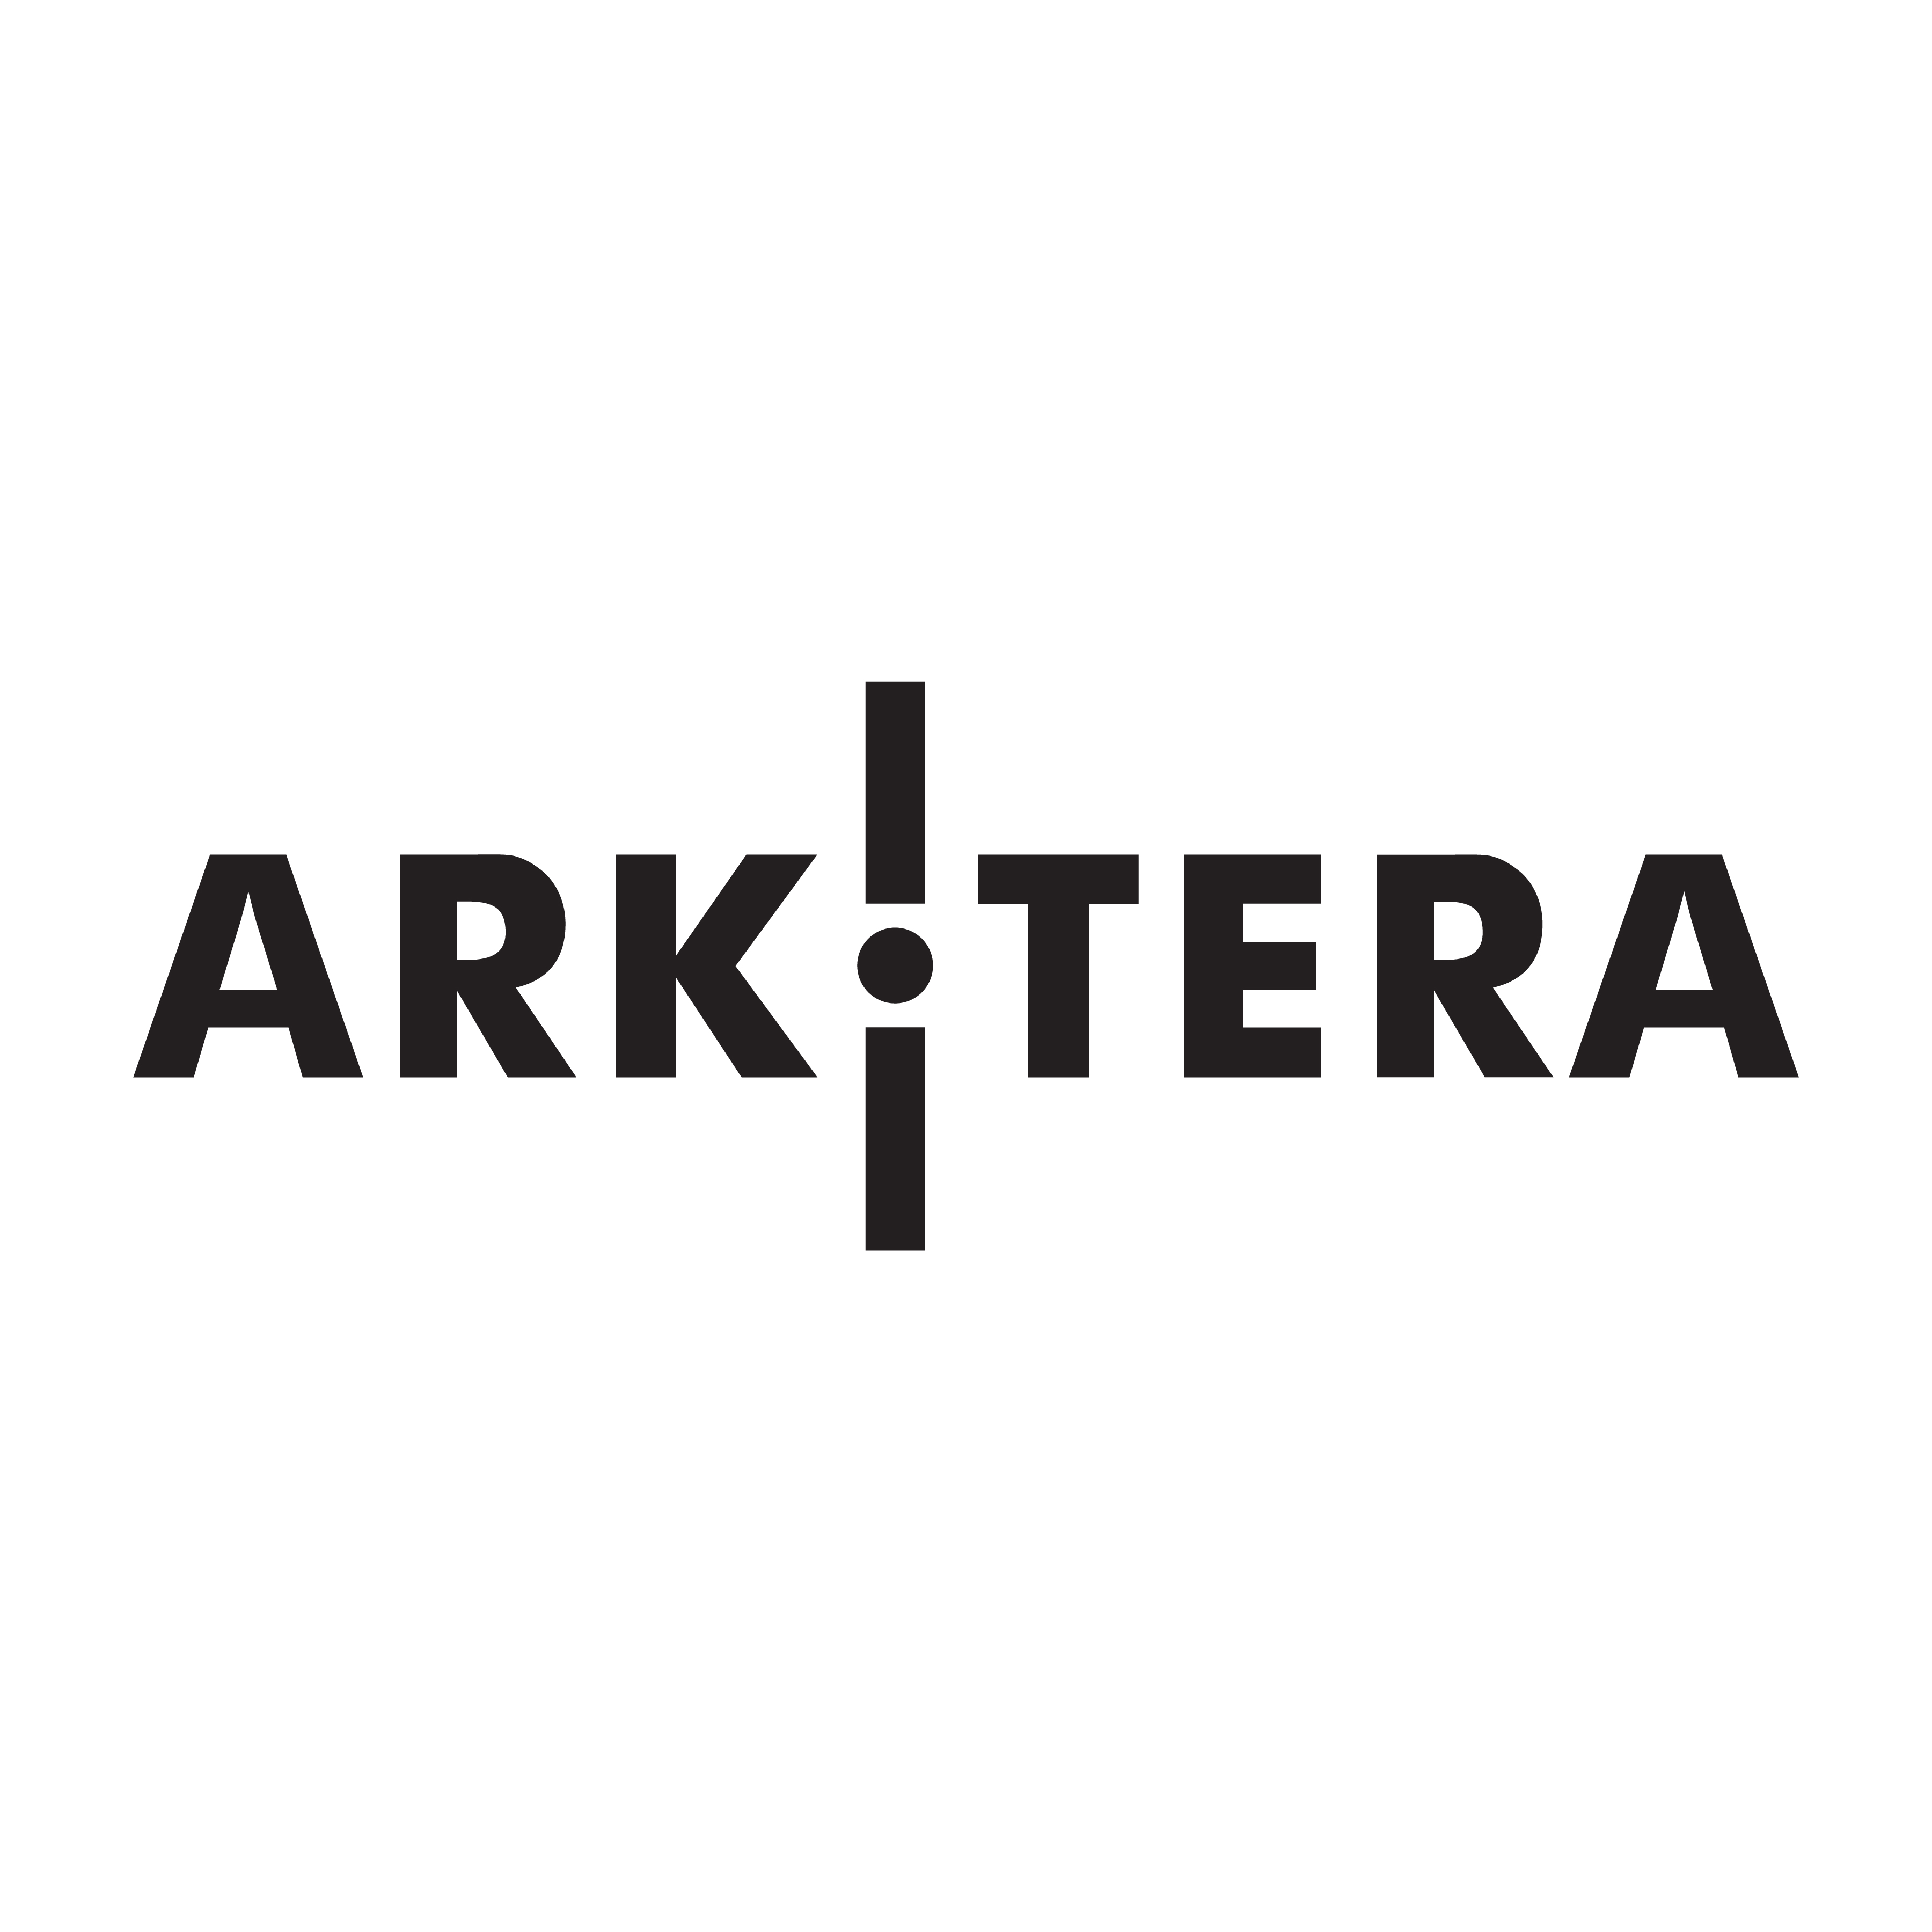 Arkitera Architecture Center